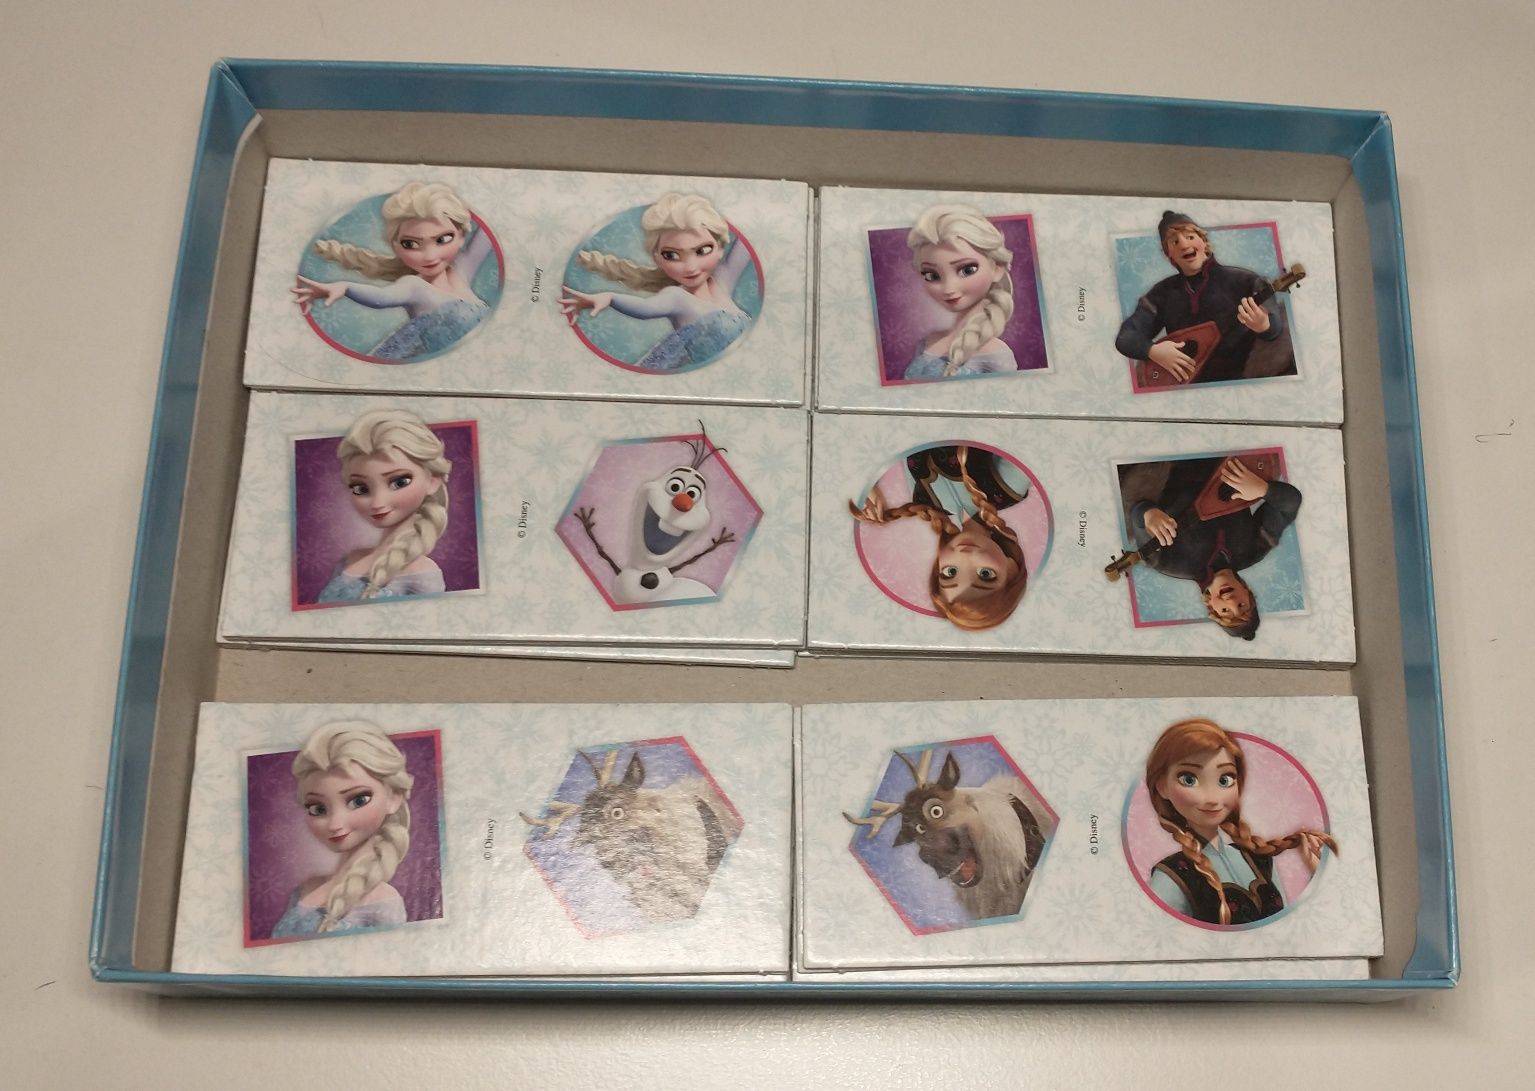 Domino Frozen Disney